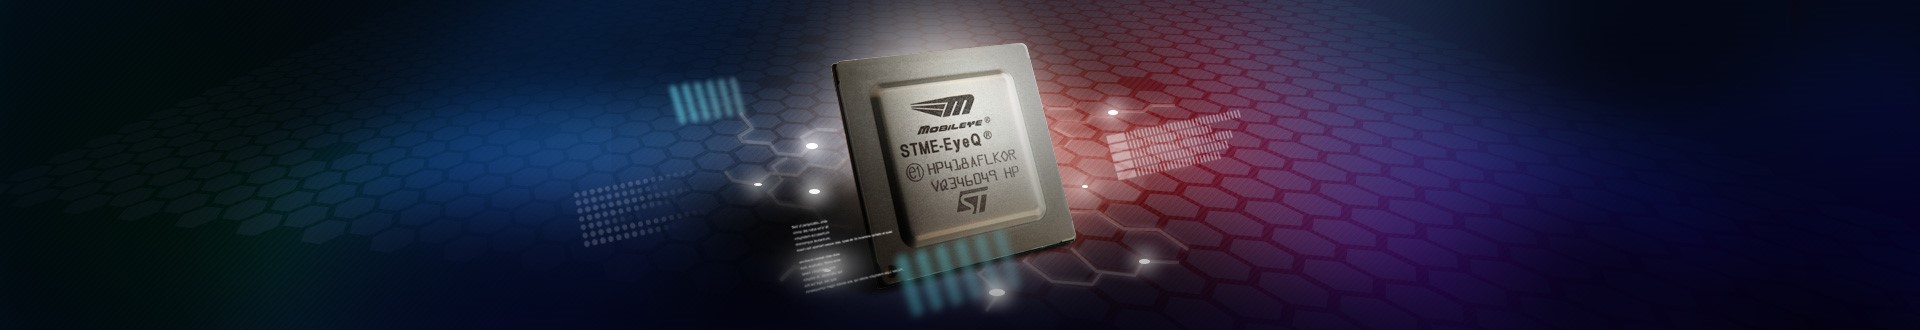 М5 чип. STME-eyeq3 St.